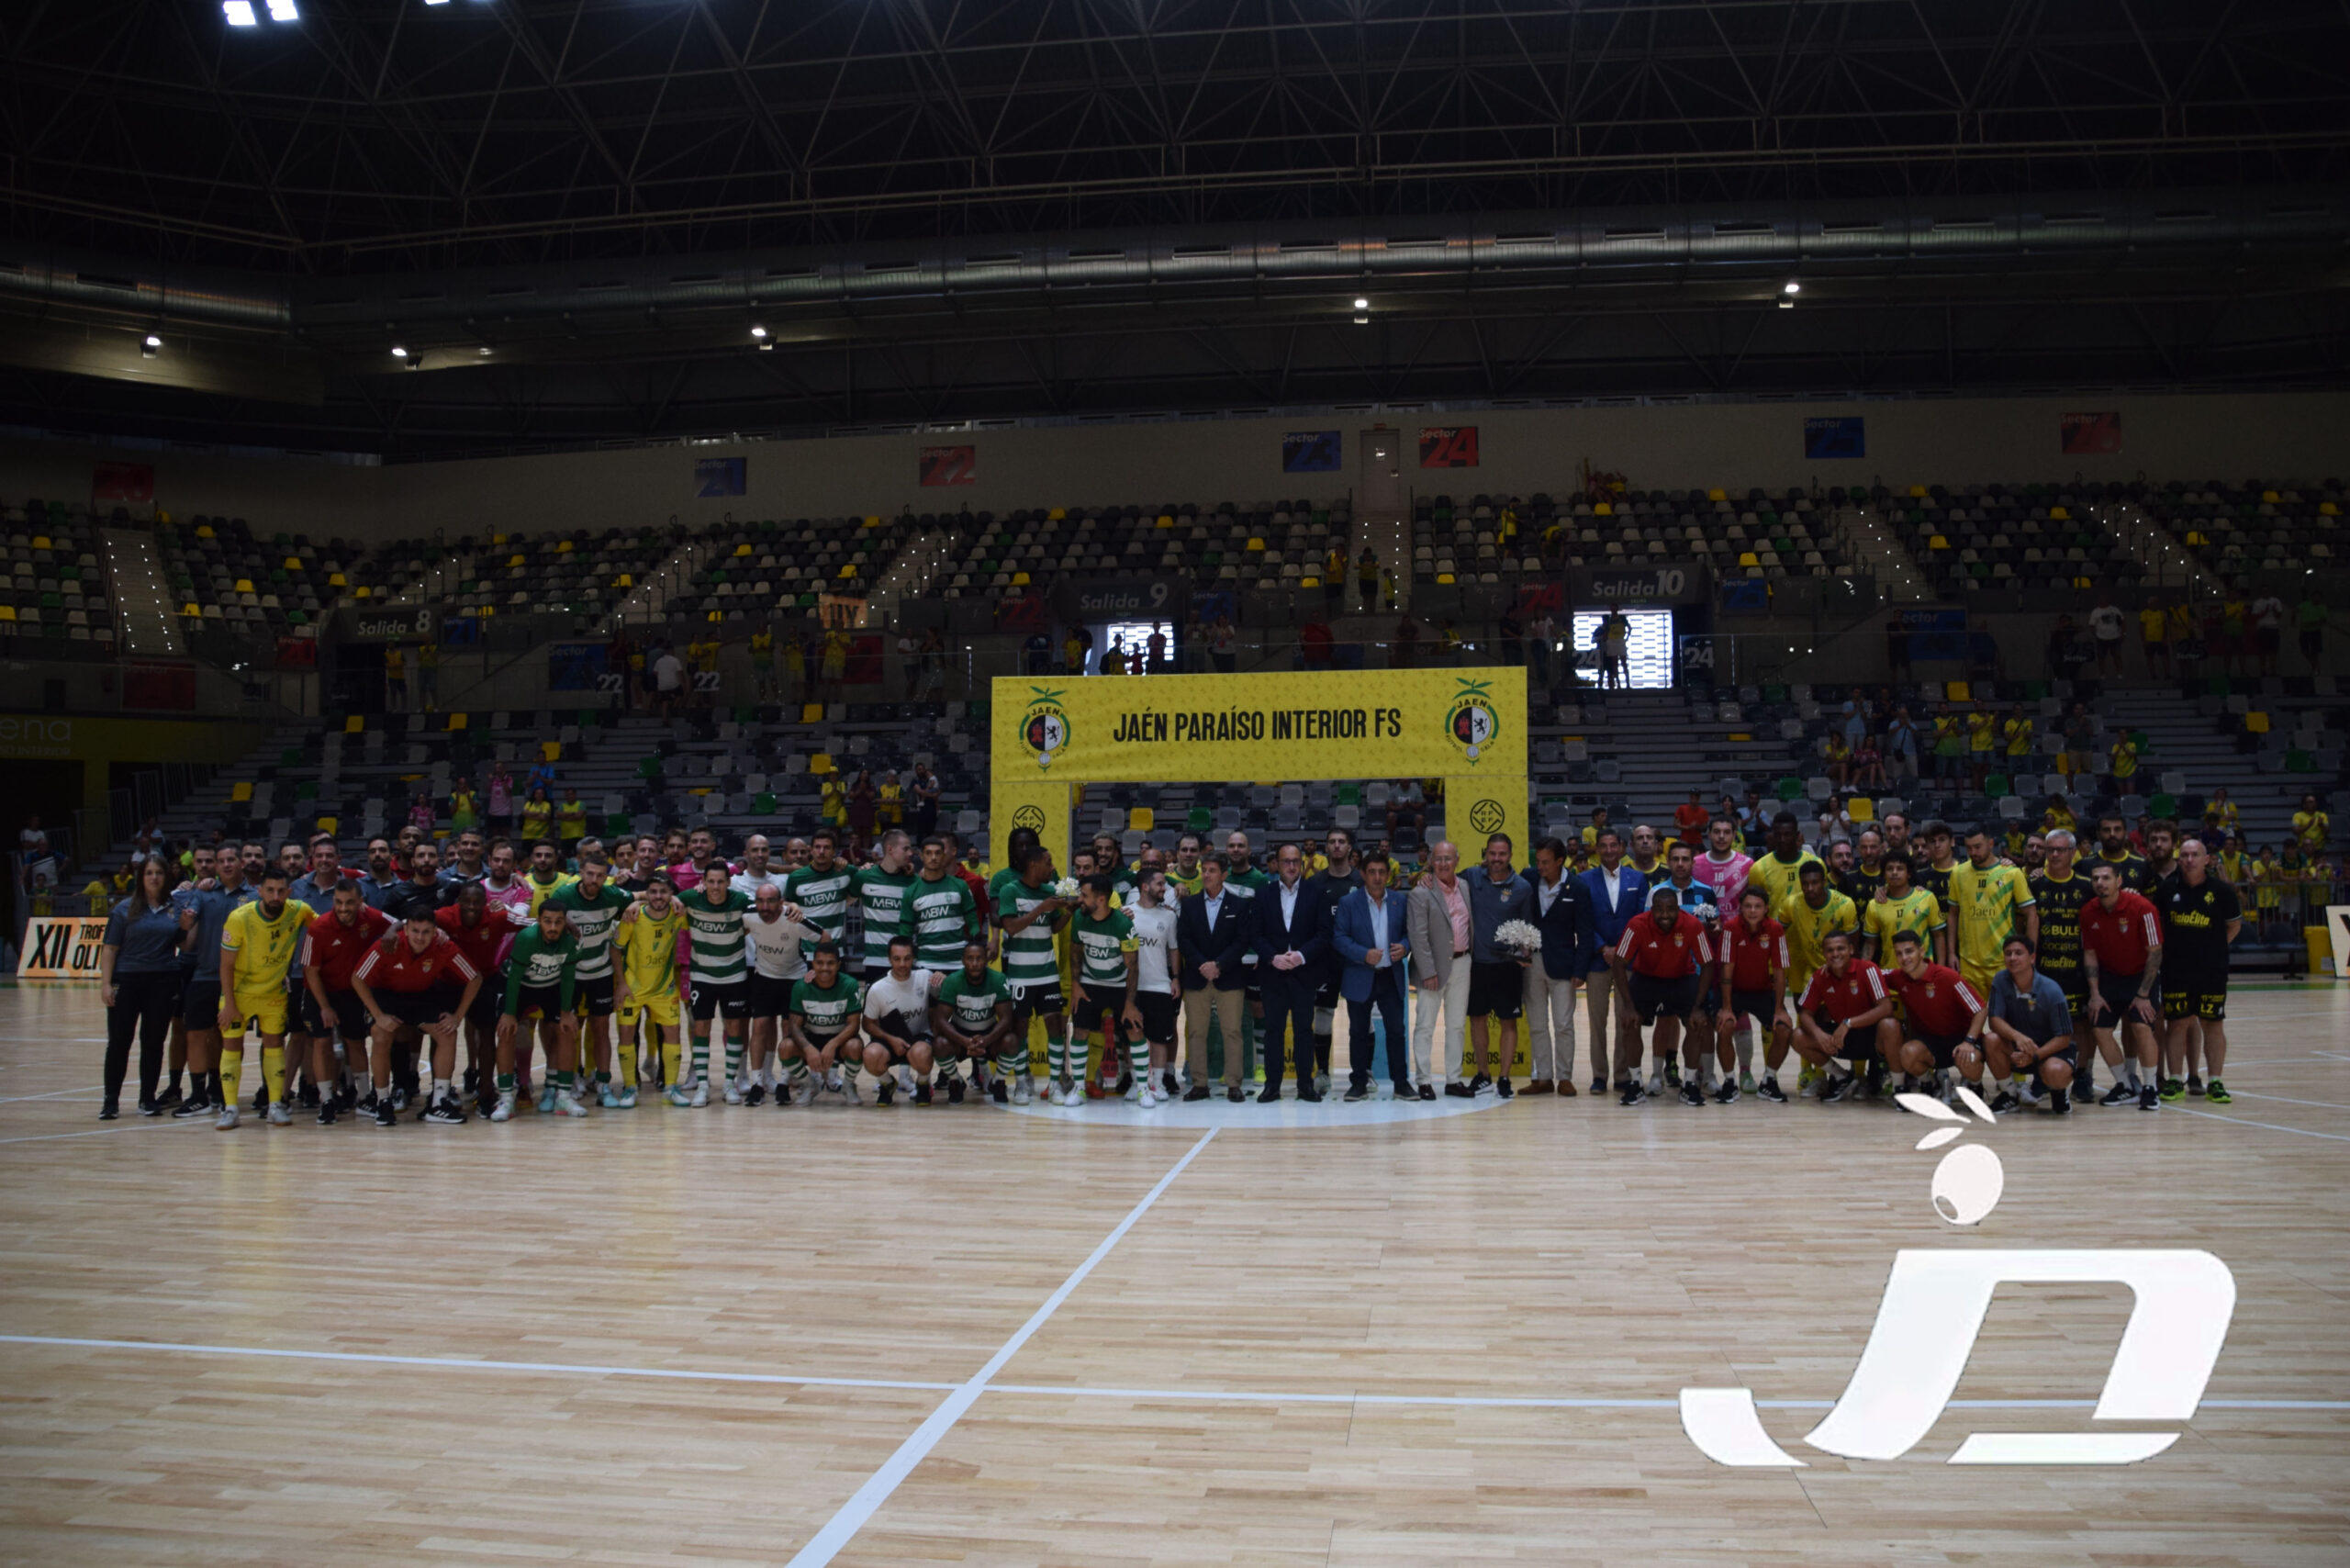 Galería de Fotos. XII Trofeo del Olivo. Movistar Inter Futsal – S.L. Benfica y Jaén Paraíso Interior F.S. – Sporting Clube de Portugal F.S.